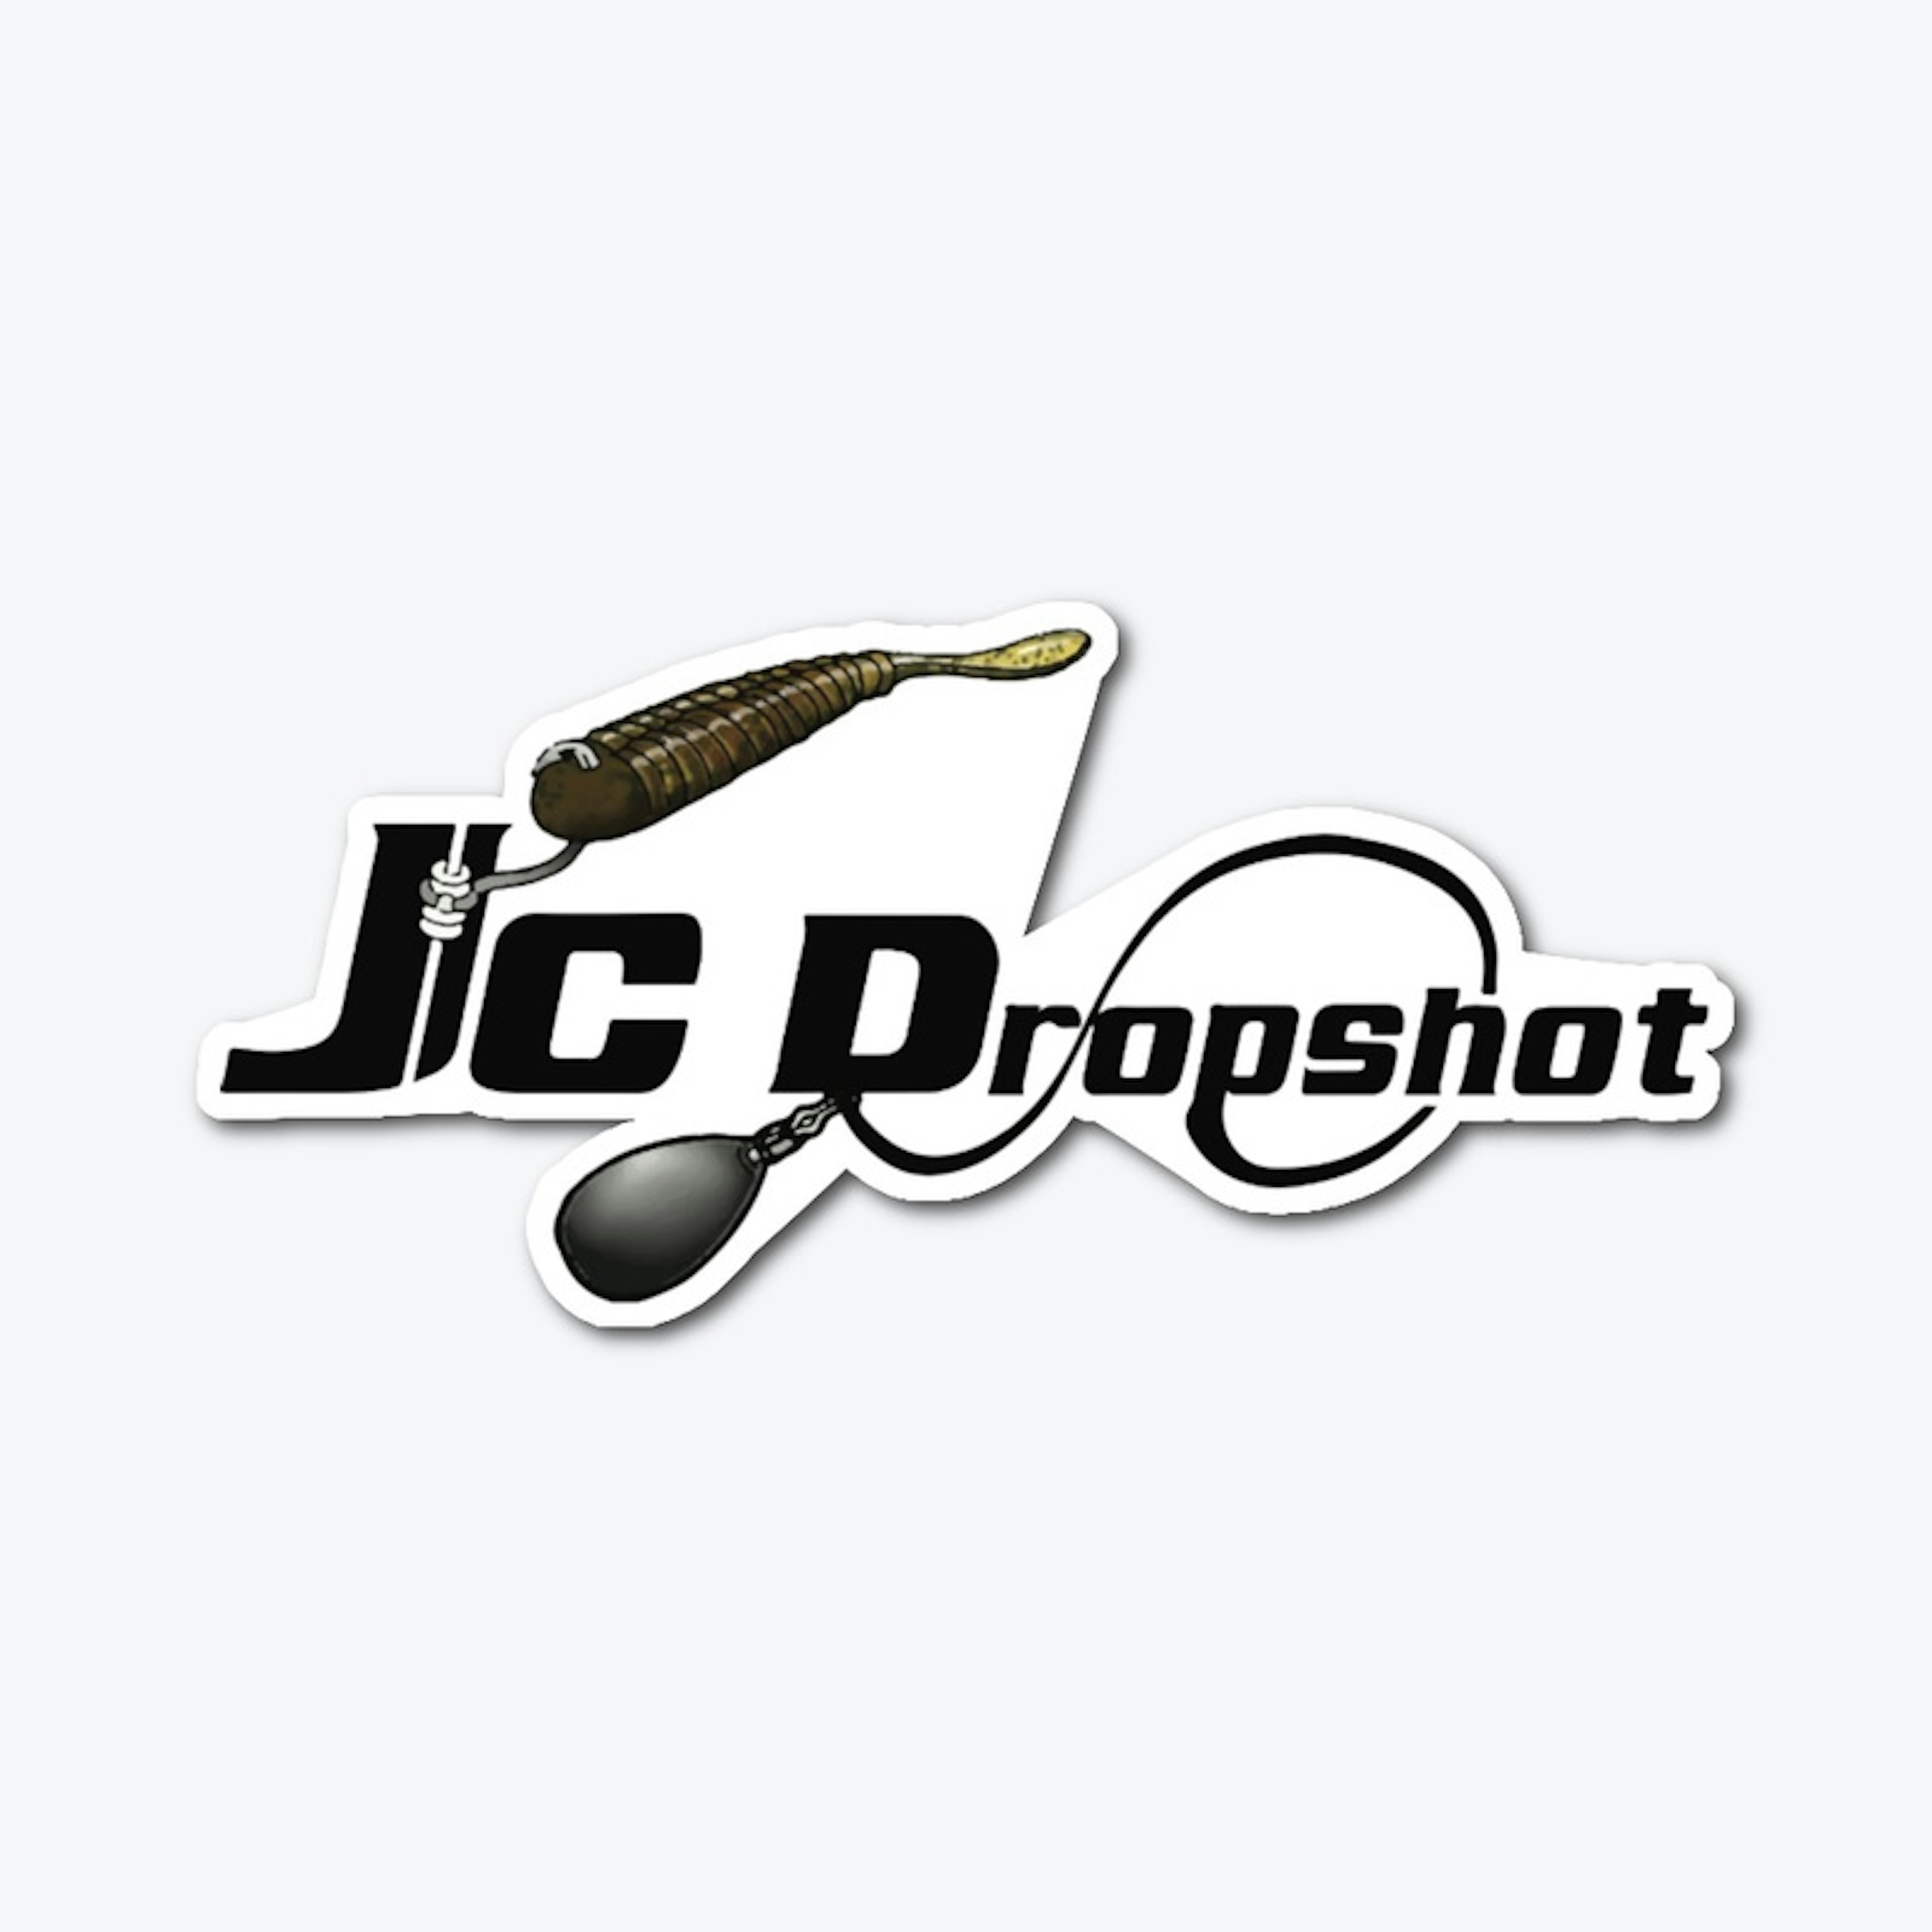 2019 JCDropshot Die-Cut sticker